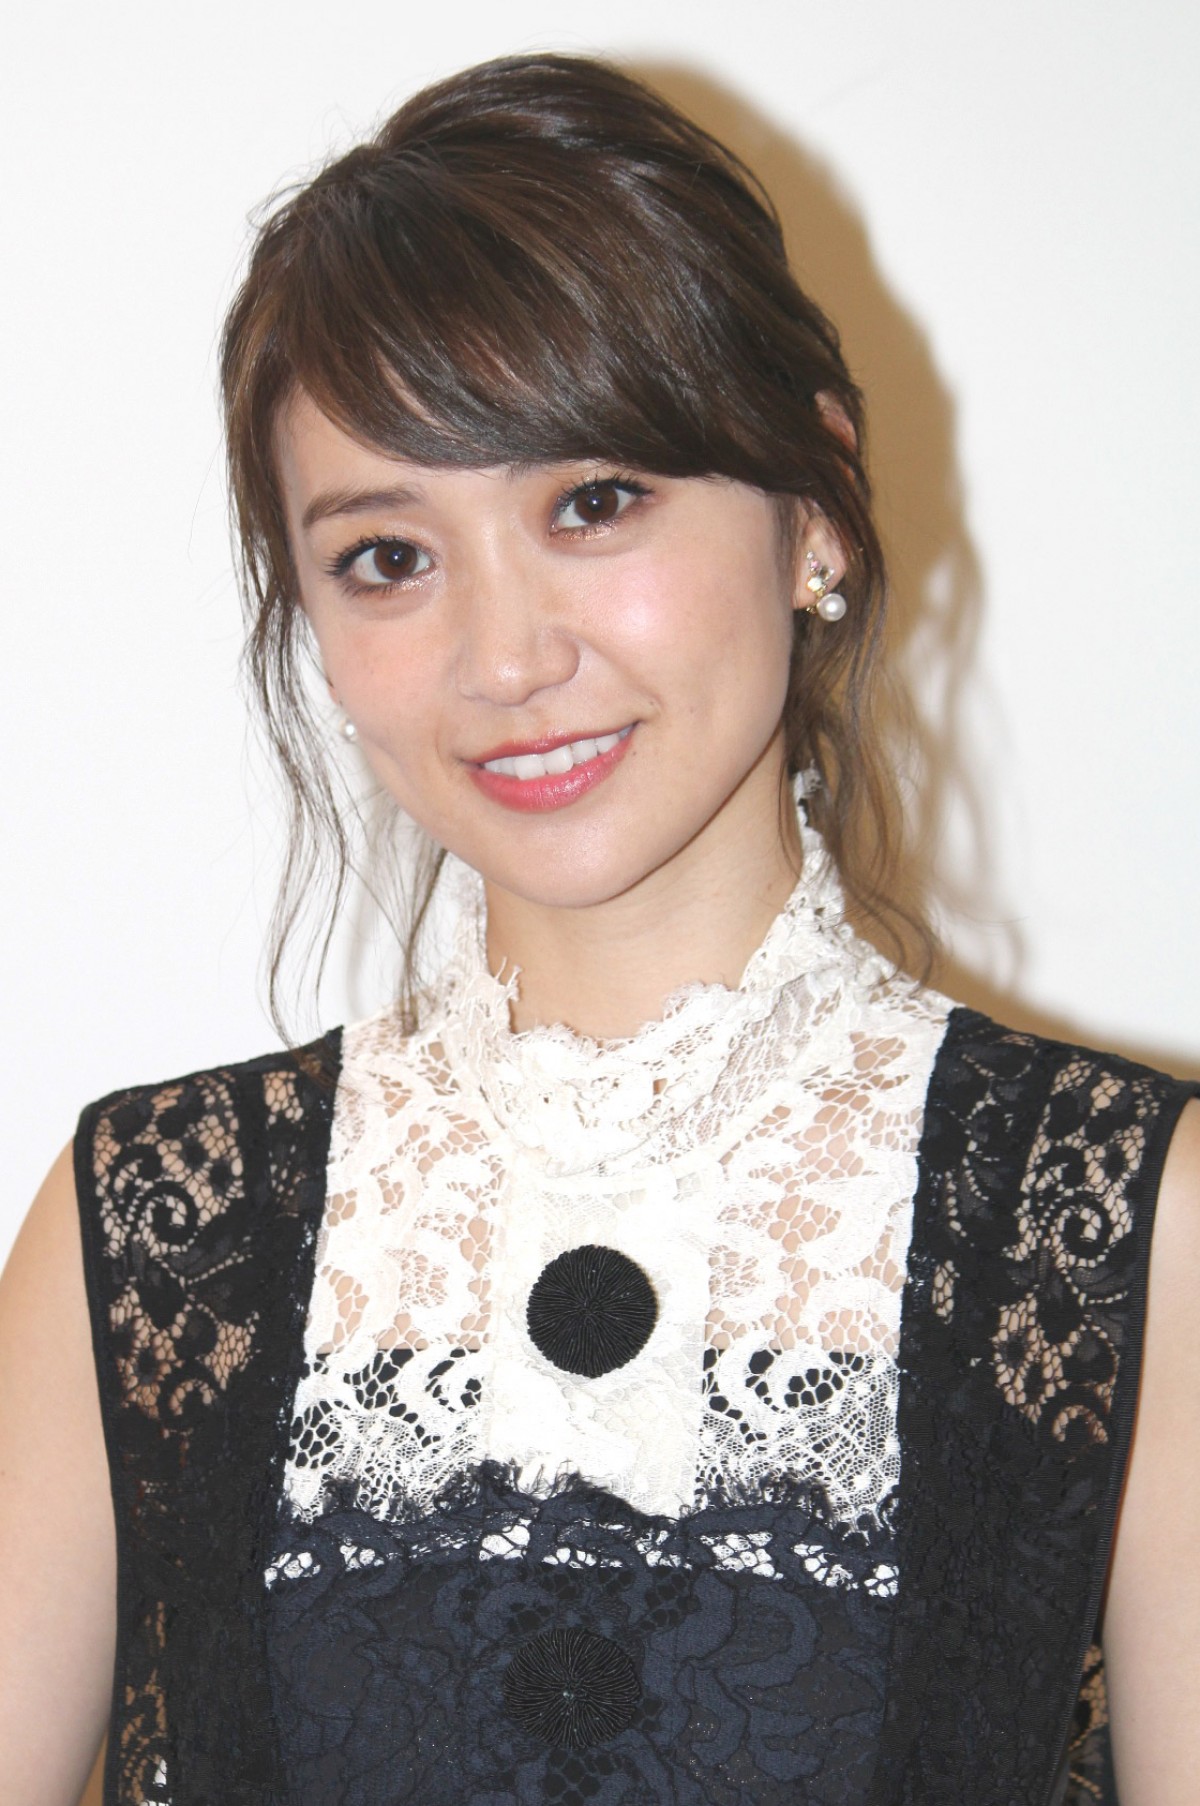 大島優子、AKB48出演作は「気になる」 女優のやりがいは “いいものを作った” 充実感